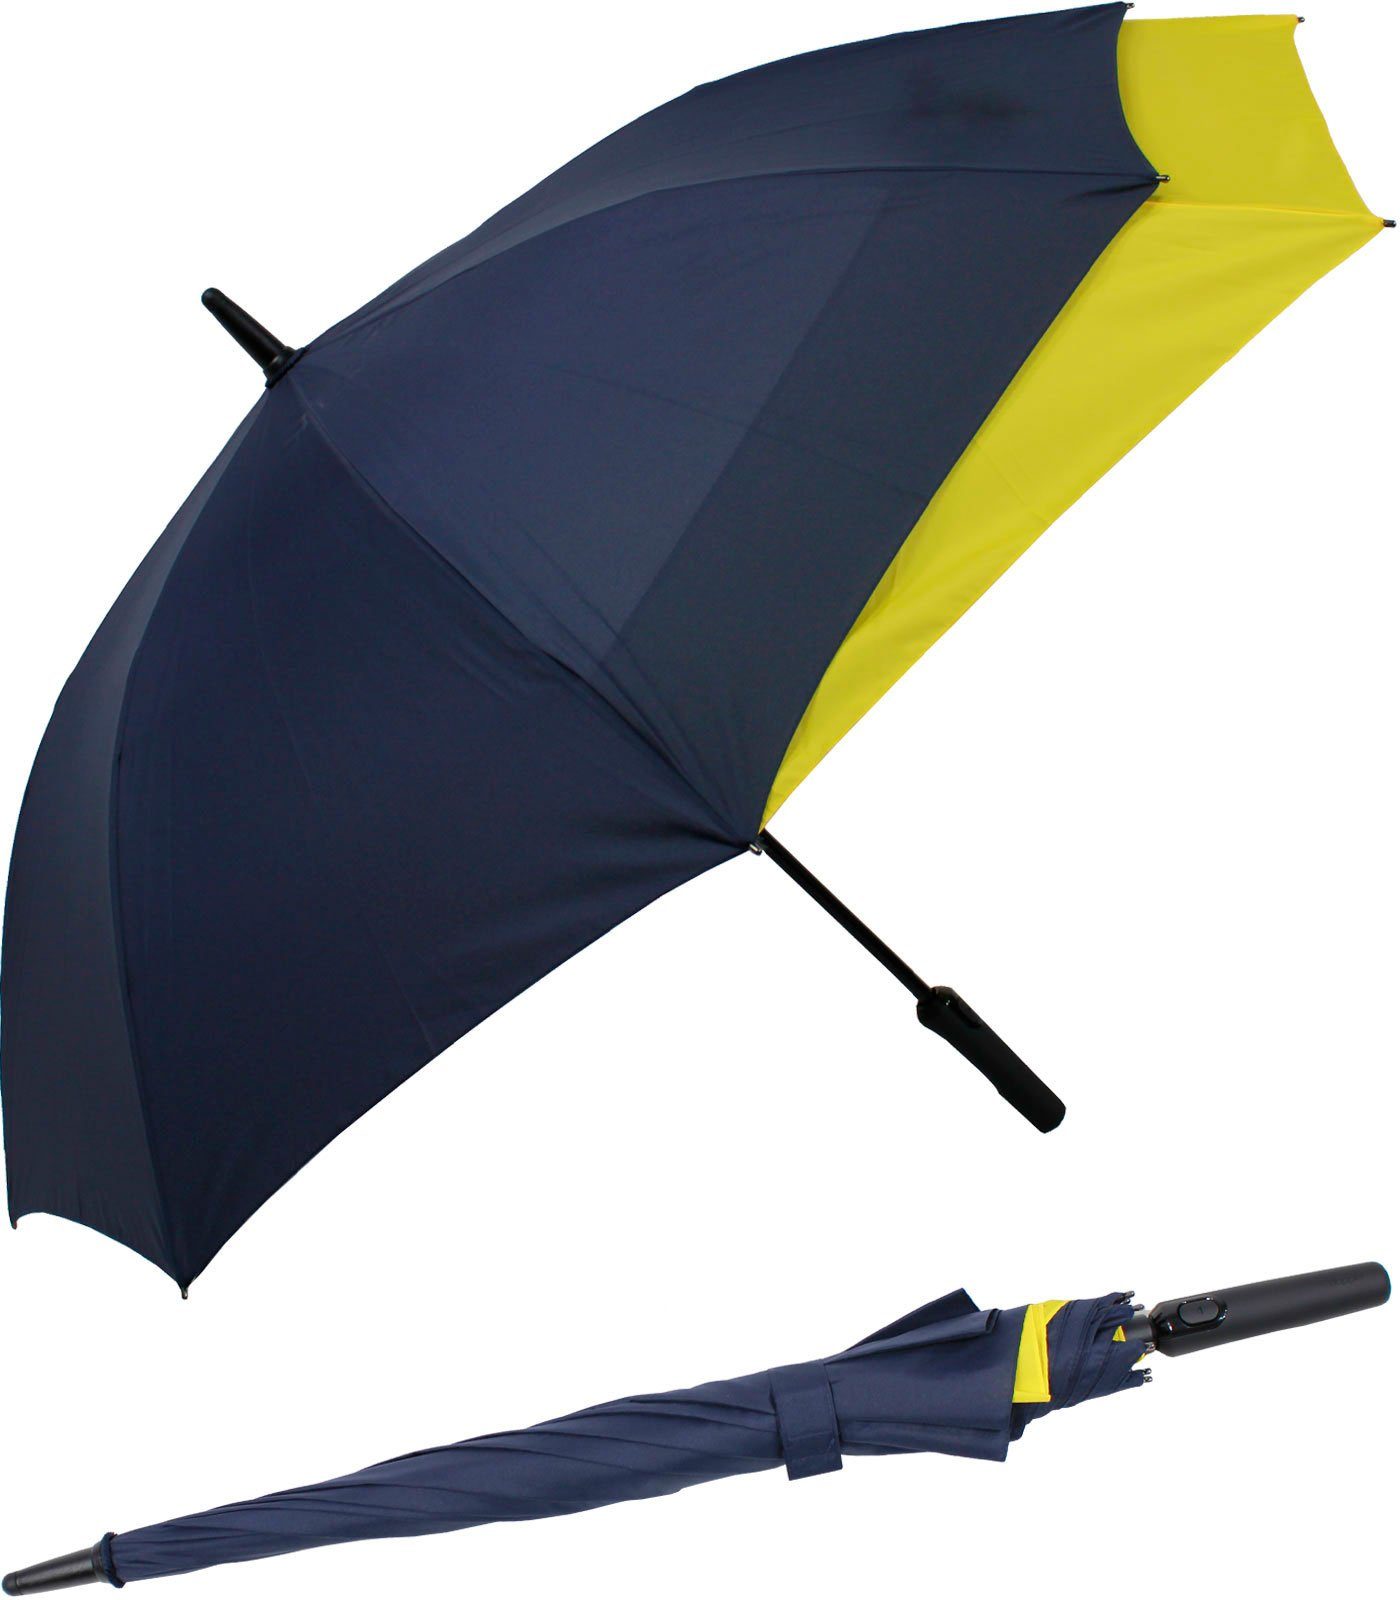 doppler® Langregenschirm Fiberglas mit Auf-Automatik - Move to XL,  vergrößert sich beim Öffnen für mehr Schutz vor Regen